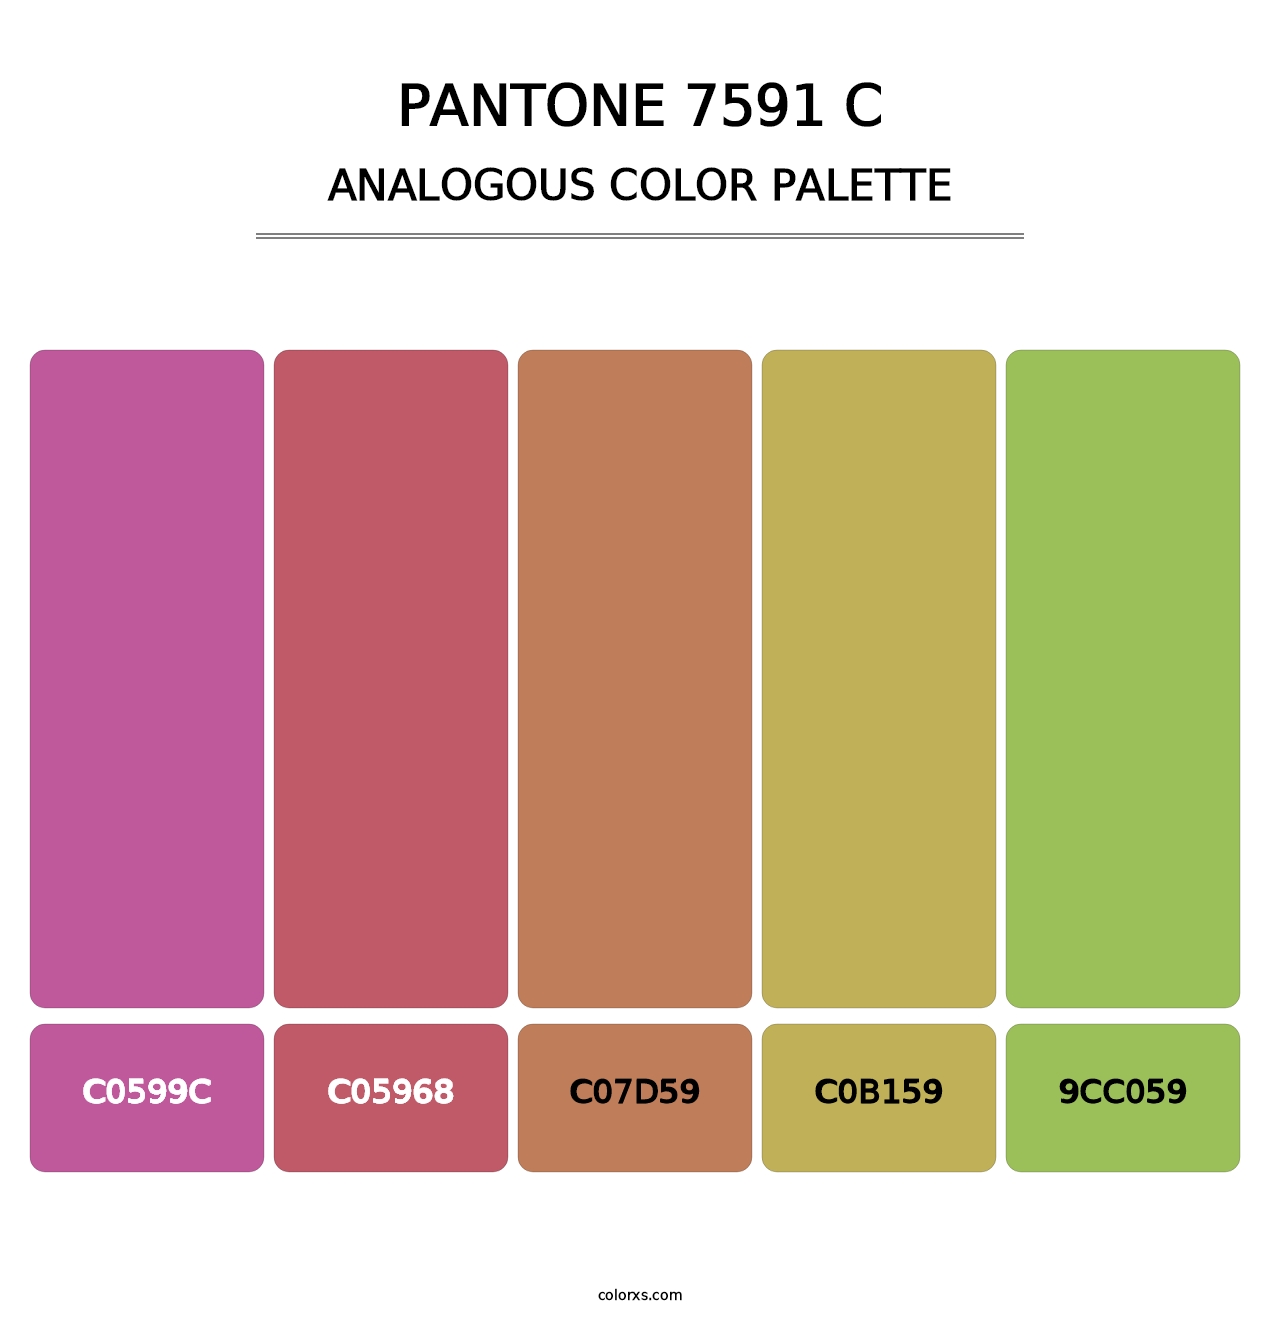 PANTONE 7591 C - Analogous Color Palette